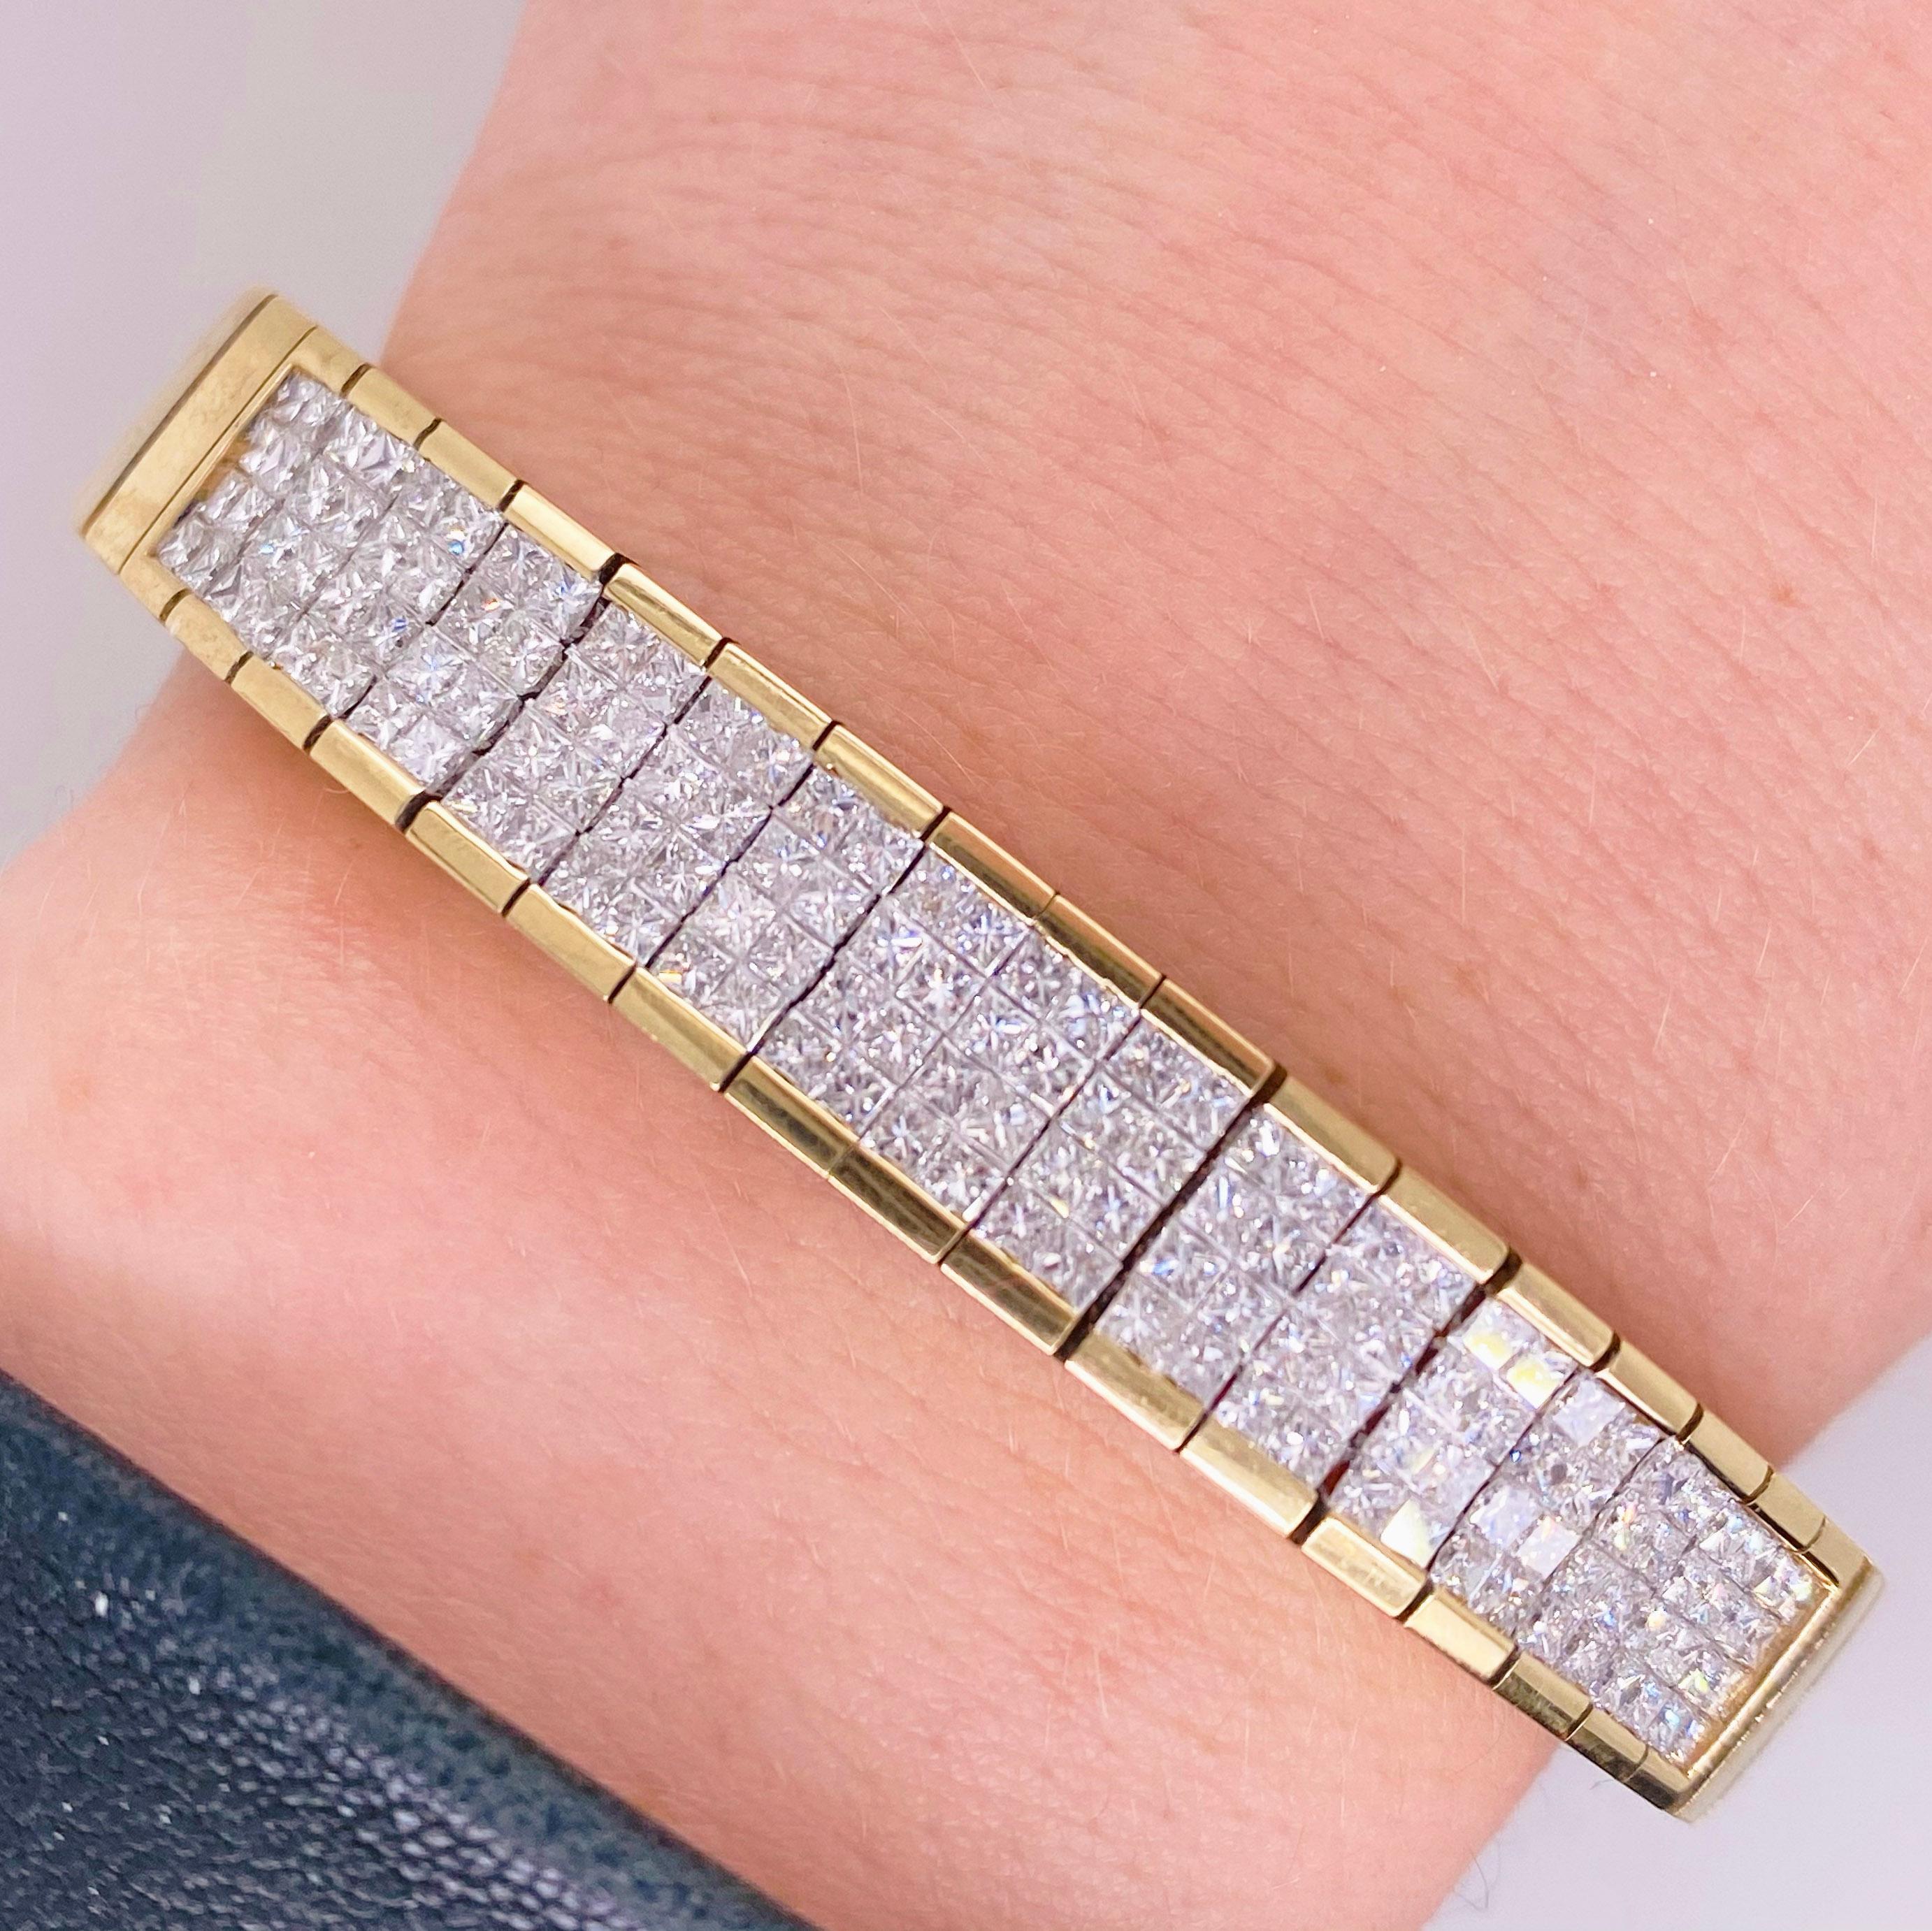 Bracelet pavé de diamants avec 4 carats (4.00 ct) de poids total de diamants de taille princesse

L'accessoire parfait pour tous les jours ou pour un événement formel ! Ce bracelet en diamant ne ressemble à aucun autre, avec 4 carats de diamants